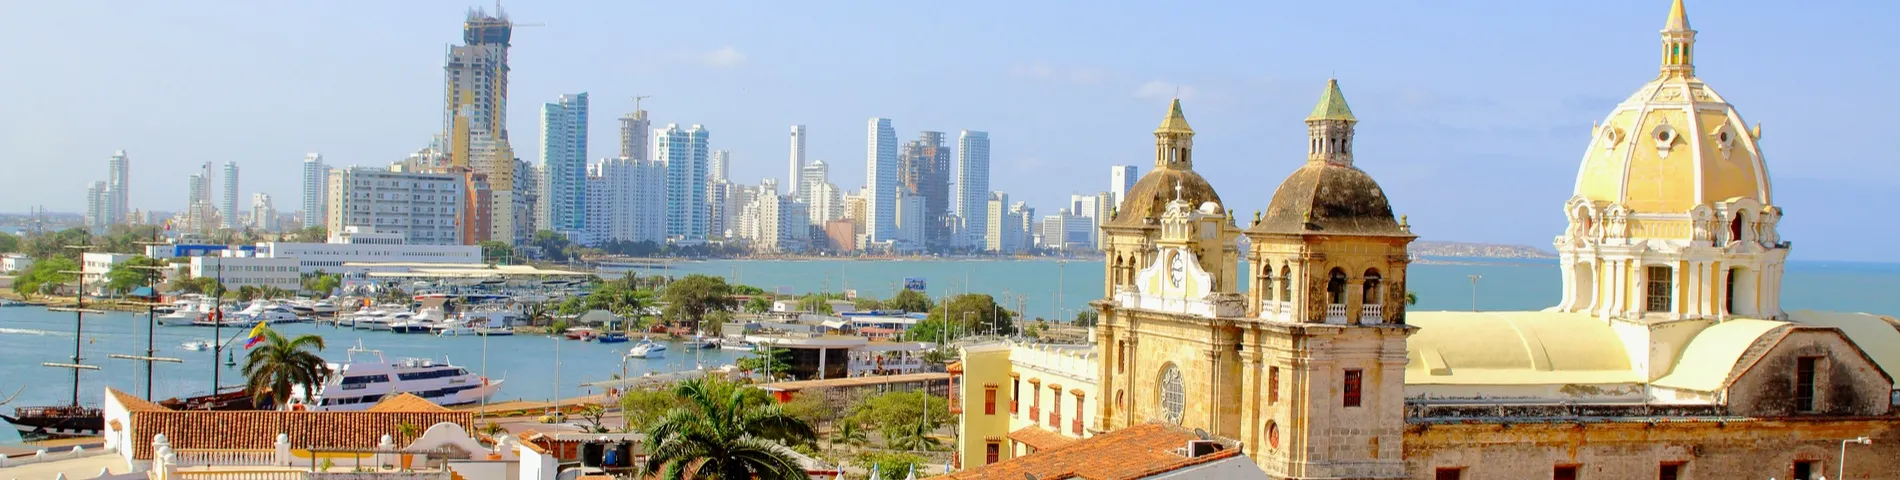 Cartagena - Standardkurs*